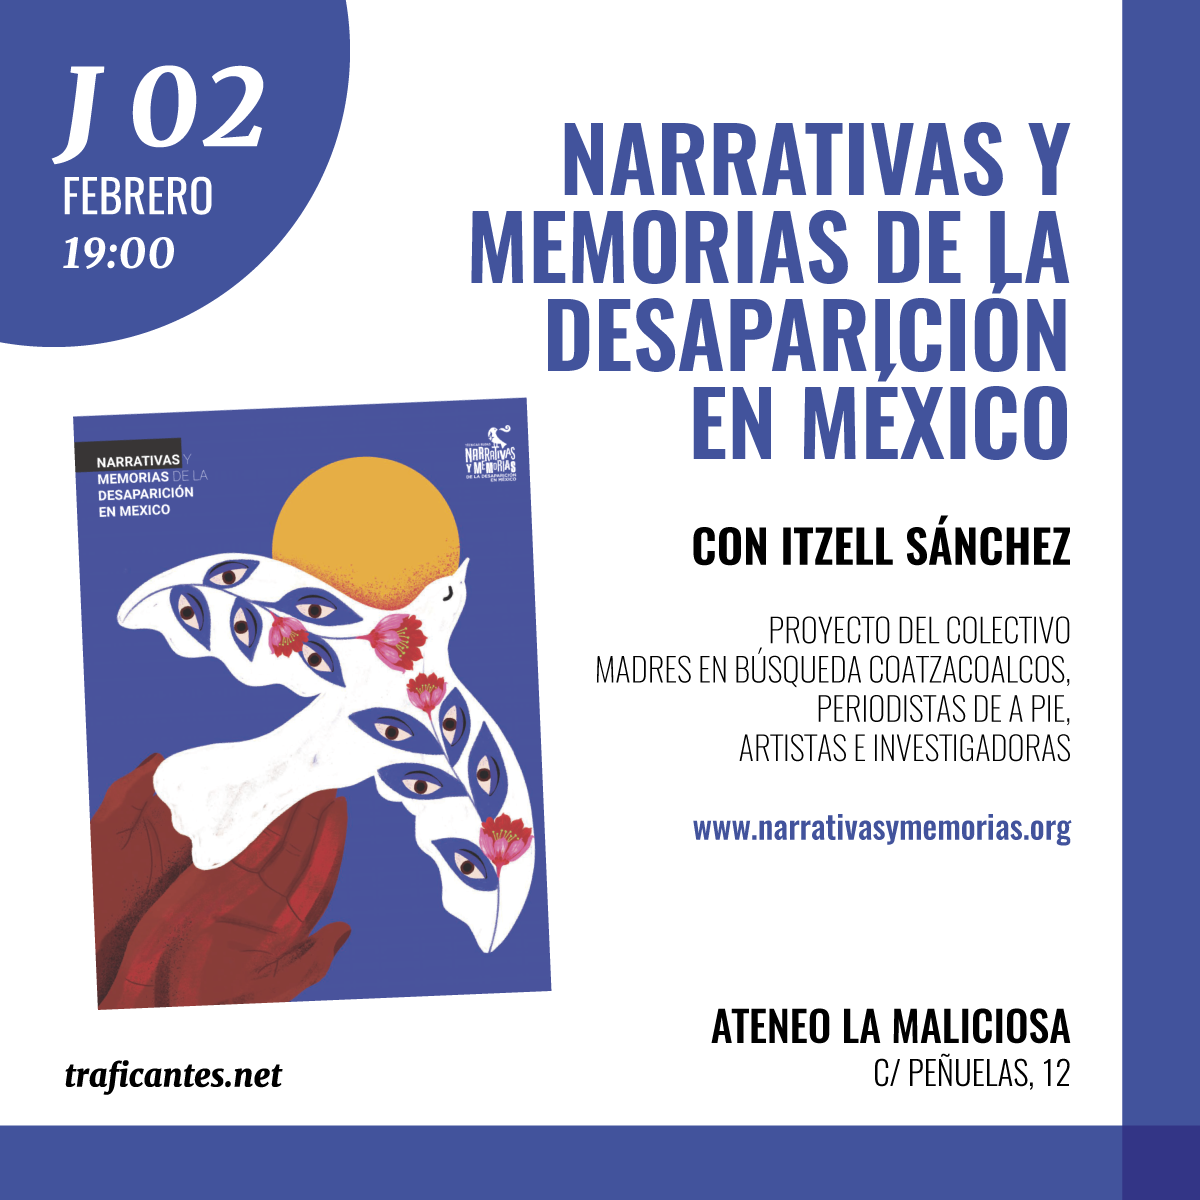 Narrativas y memorias de la desaparición en México